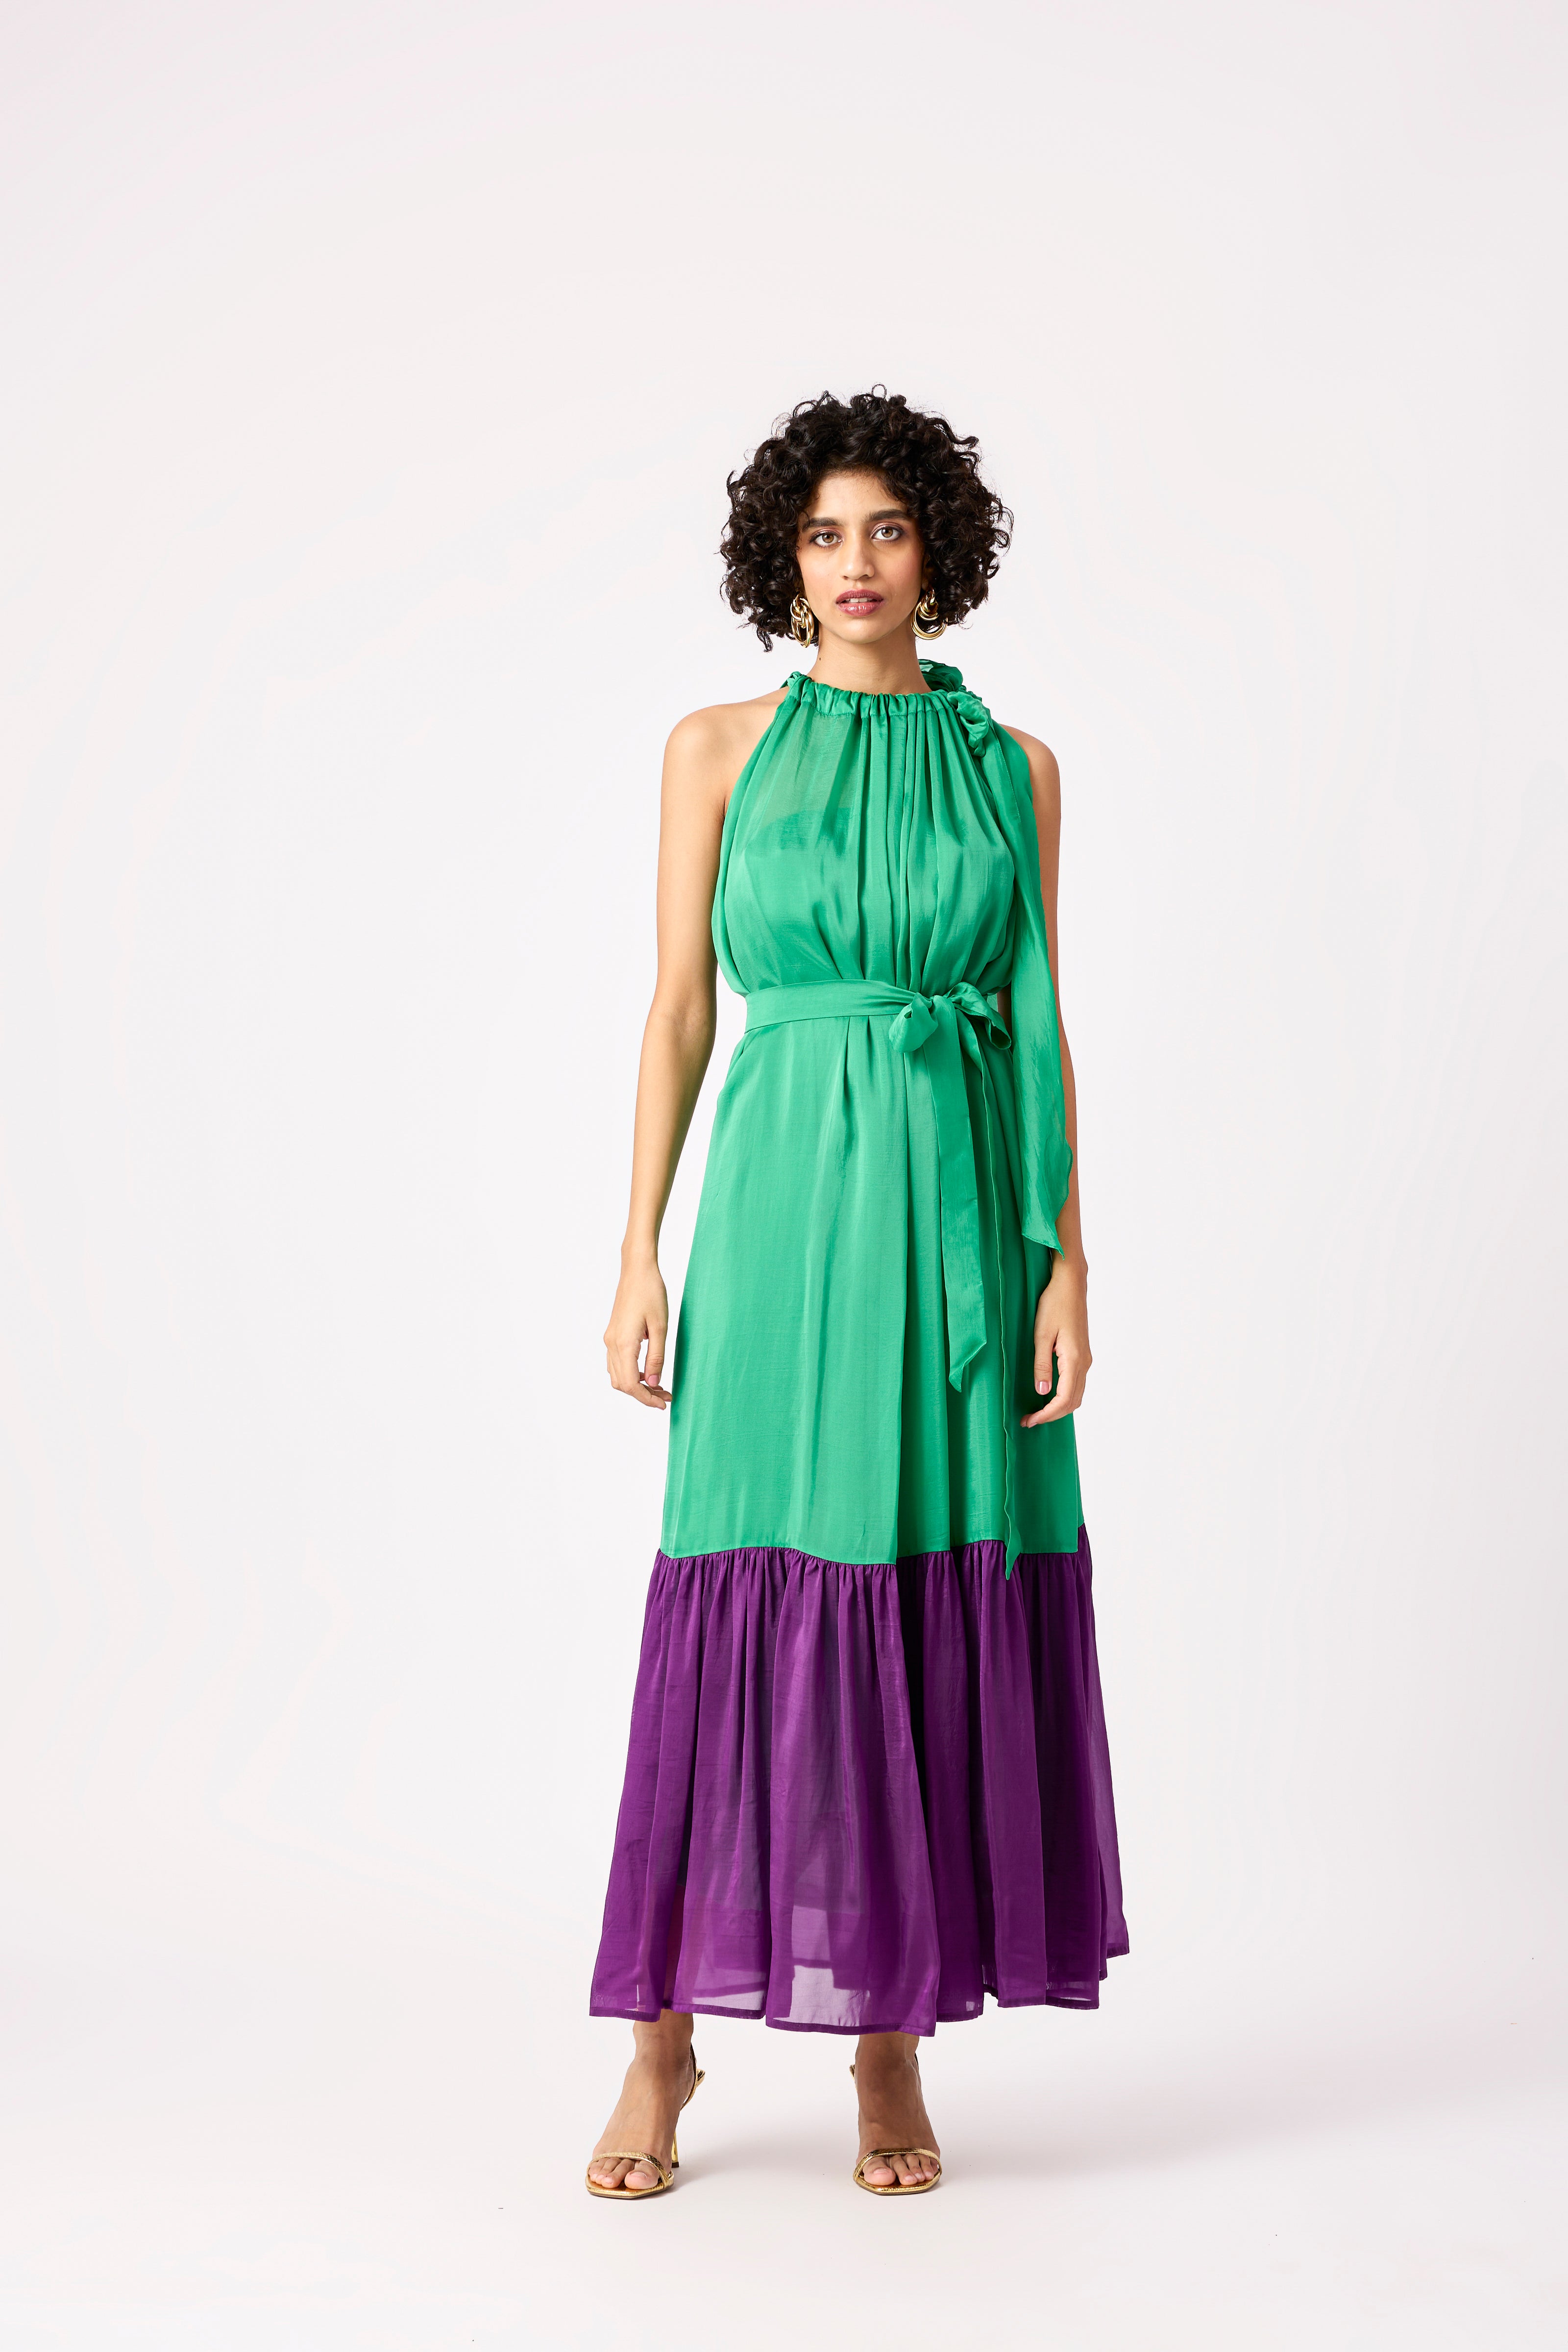 Victoria Organza Dress - Bright Green & Purple